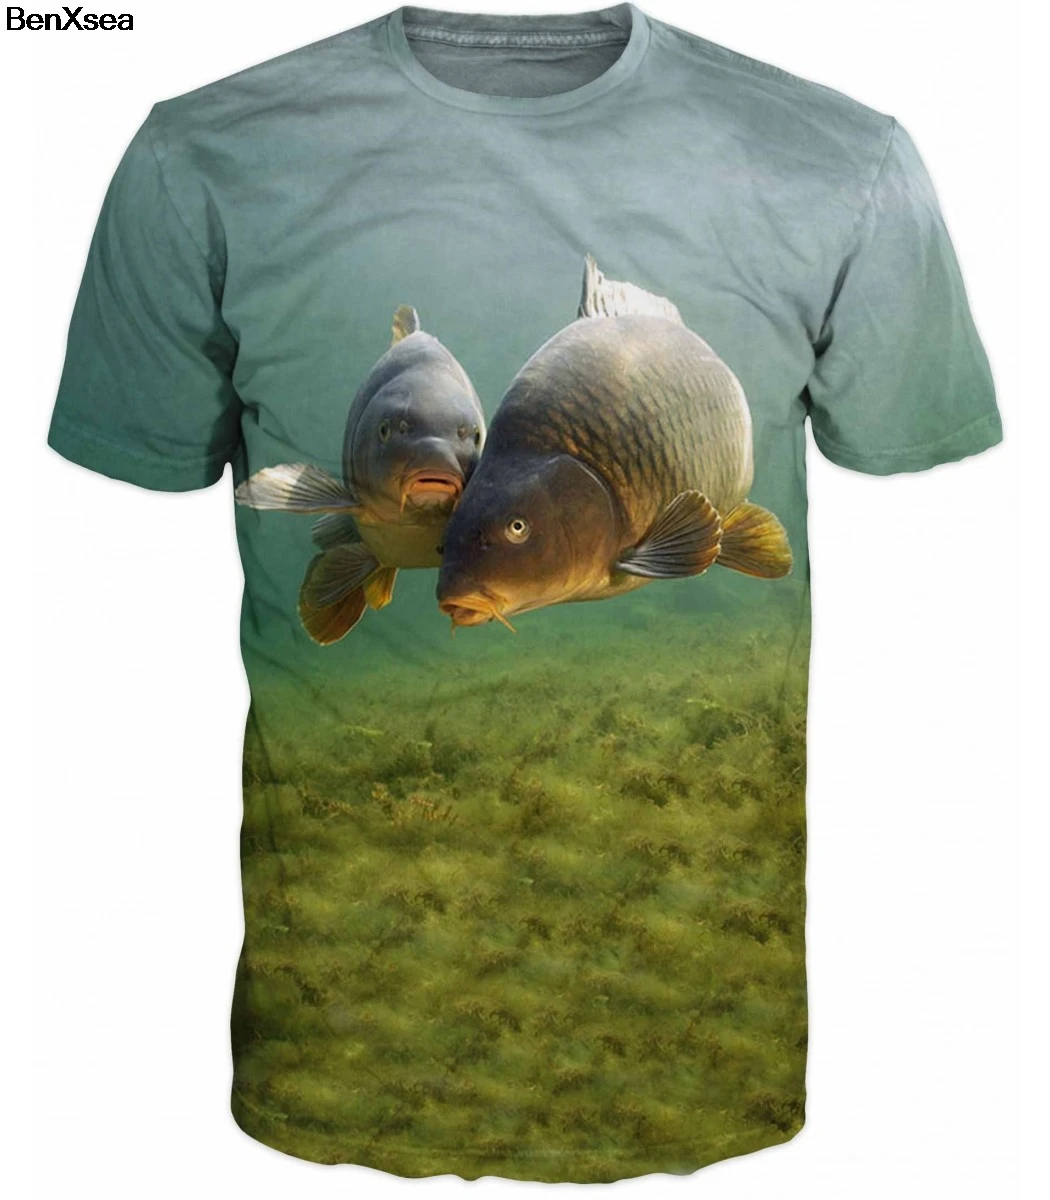 Летняя футболка с 3D принтом, крутая Мужская футболка с 3D рыбкой, хобби, футболка с карпом, наряды, унисекс, милые хипстерские рубашки для девочек, оверсайз